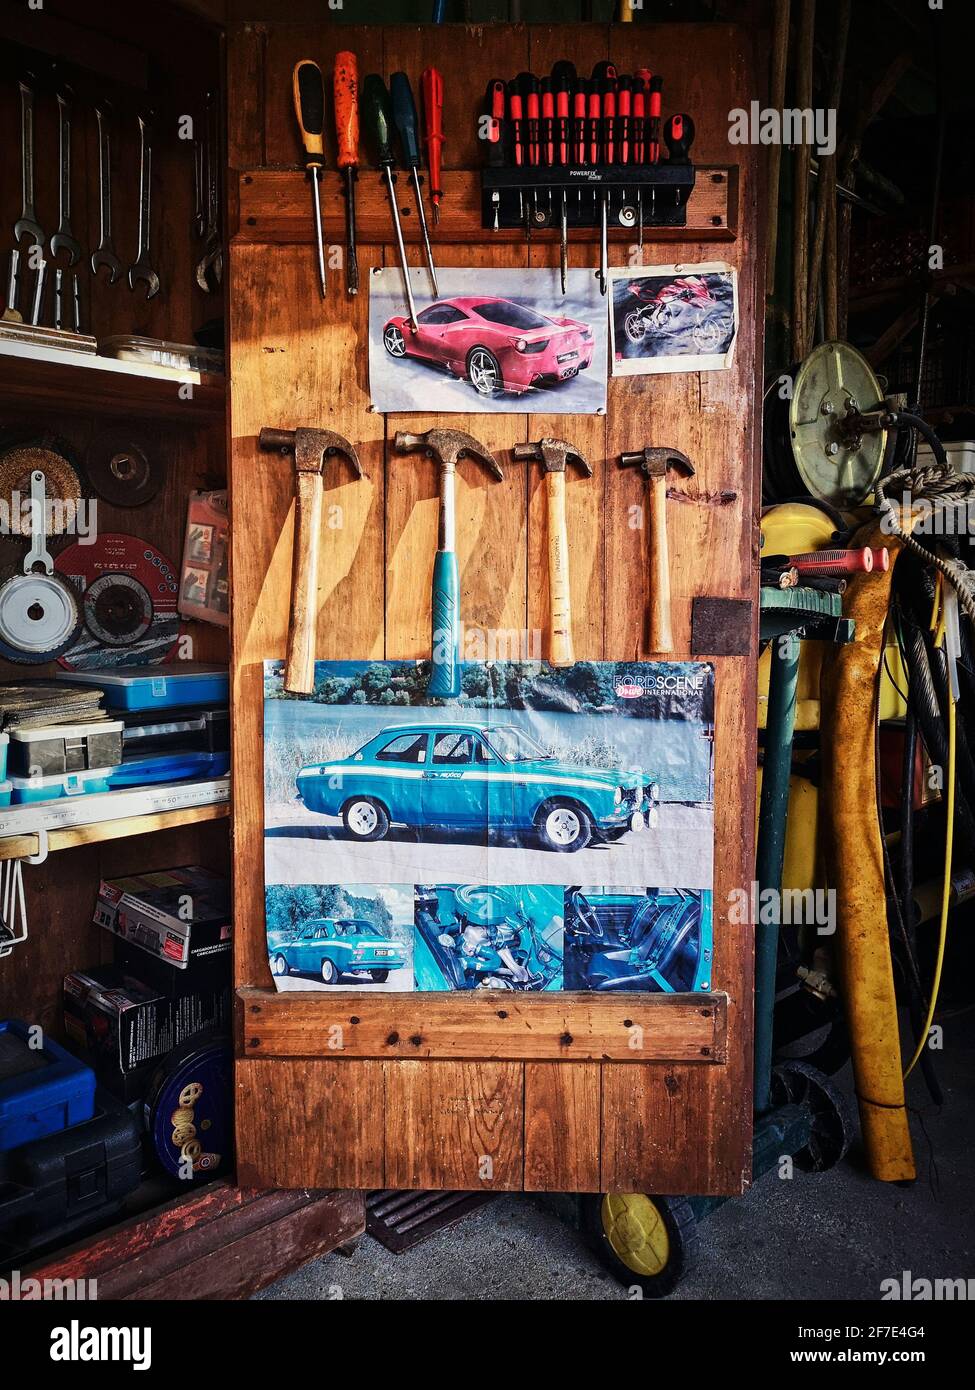 Attrezzatura da lavoro all'interno di un armadio con poster per auto. Aprire un armadio in legno con utensili da lavoro Foto Stock